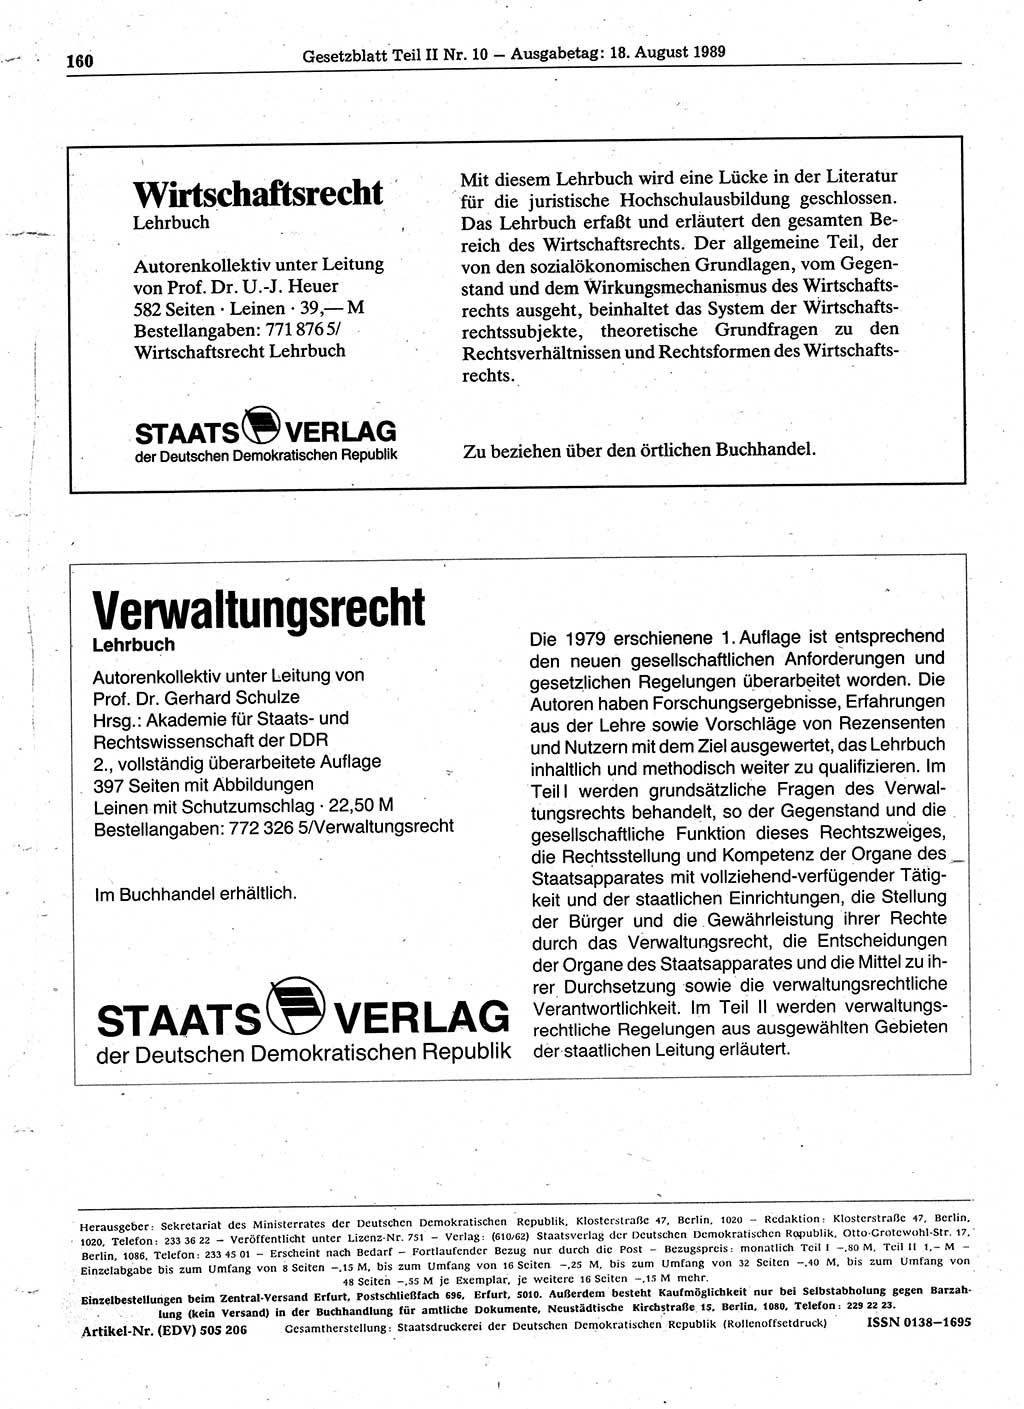 Gesetzblatt (GBl.) der Deutschen Demokratischen Republik (DDR) Teil ⅠⅠ 1989, Seite 160 (GBl. DDR ⅠⅠ 1989, S. 160)